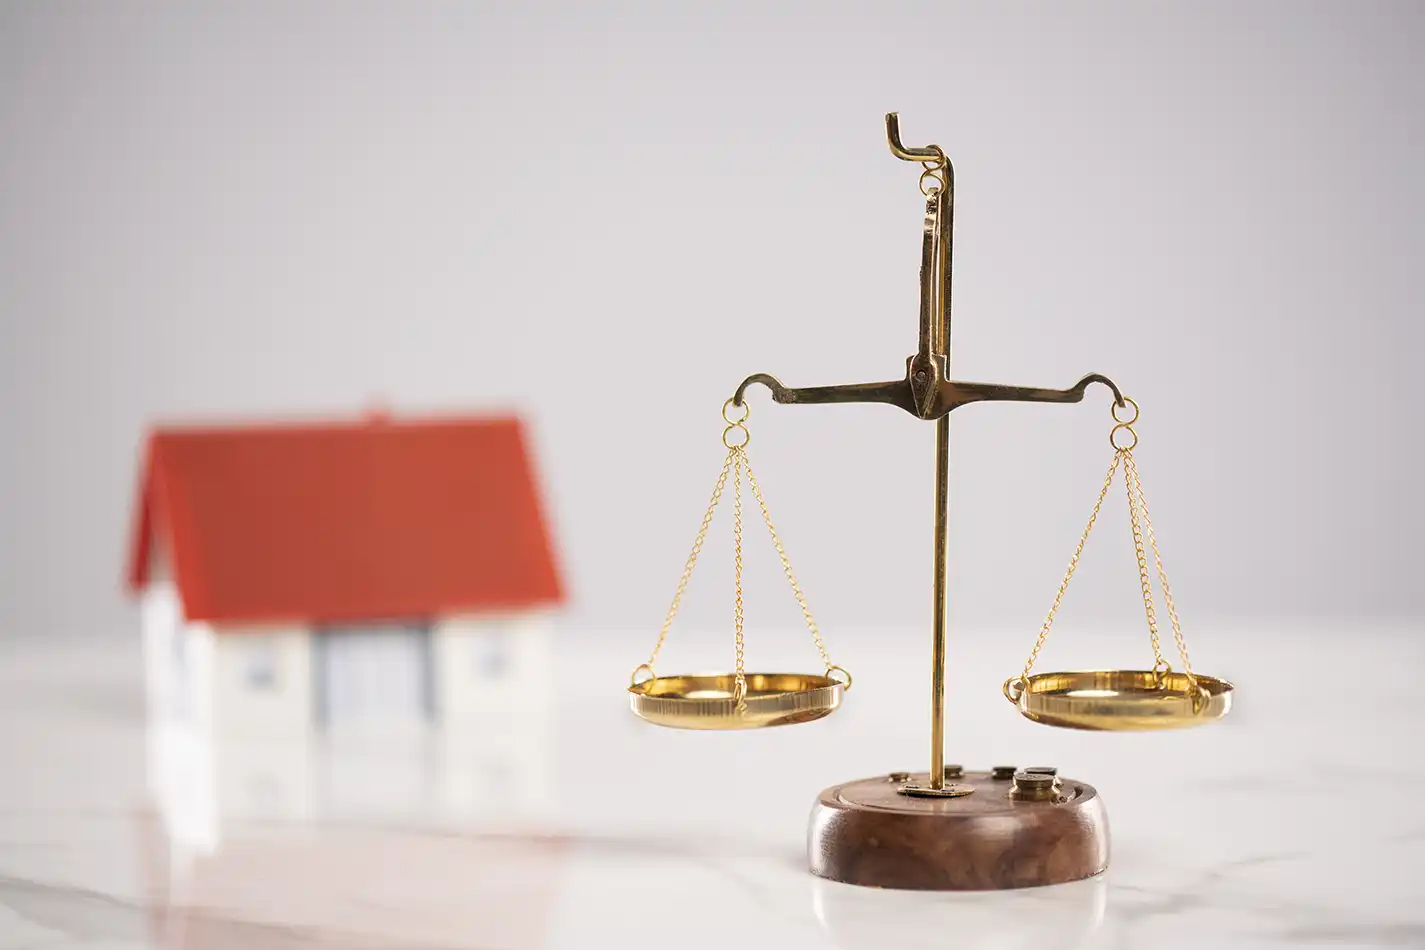 10 cas en droit Immobilier où faire appel à un avocat